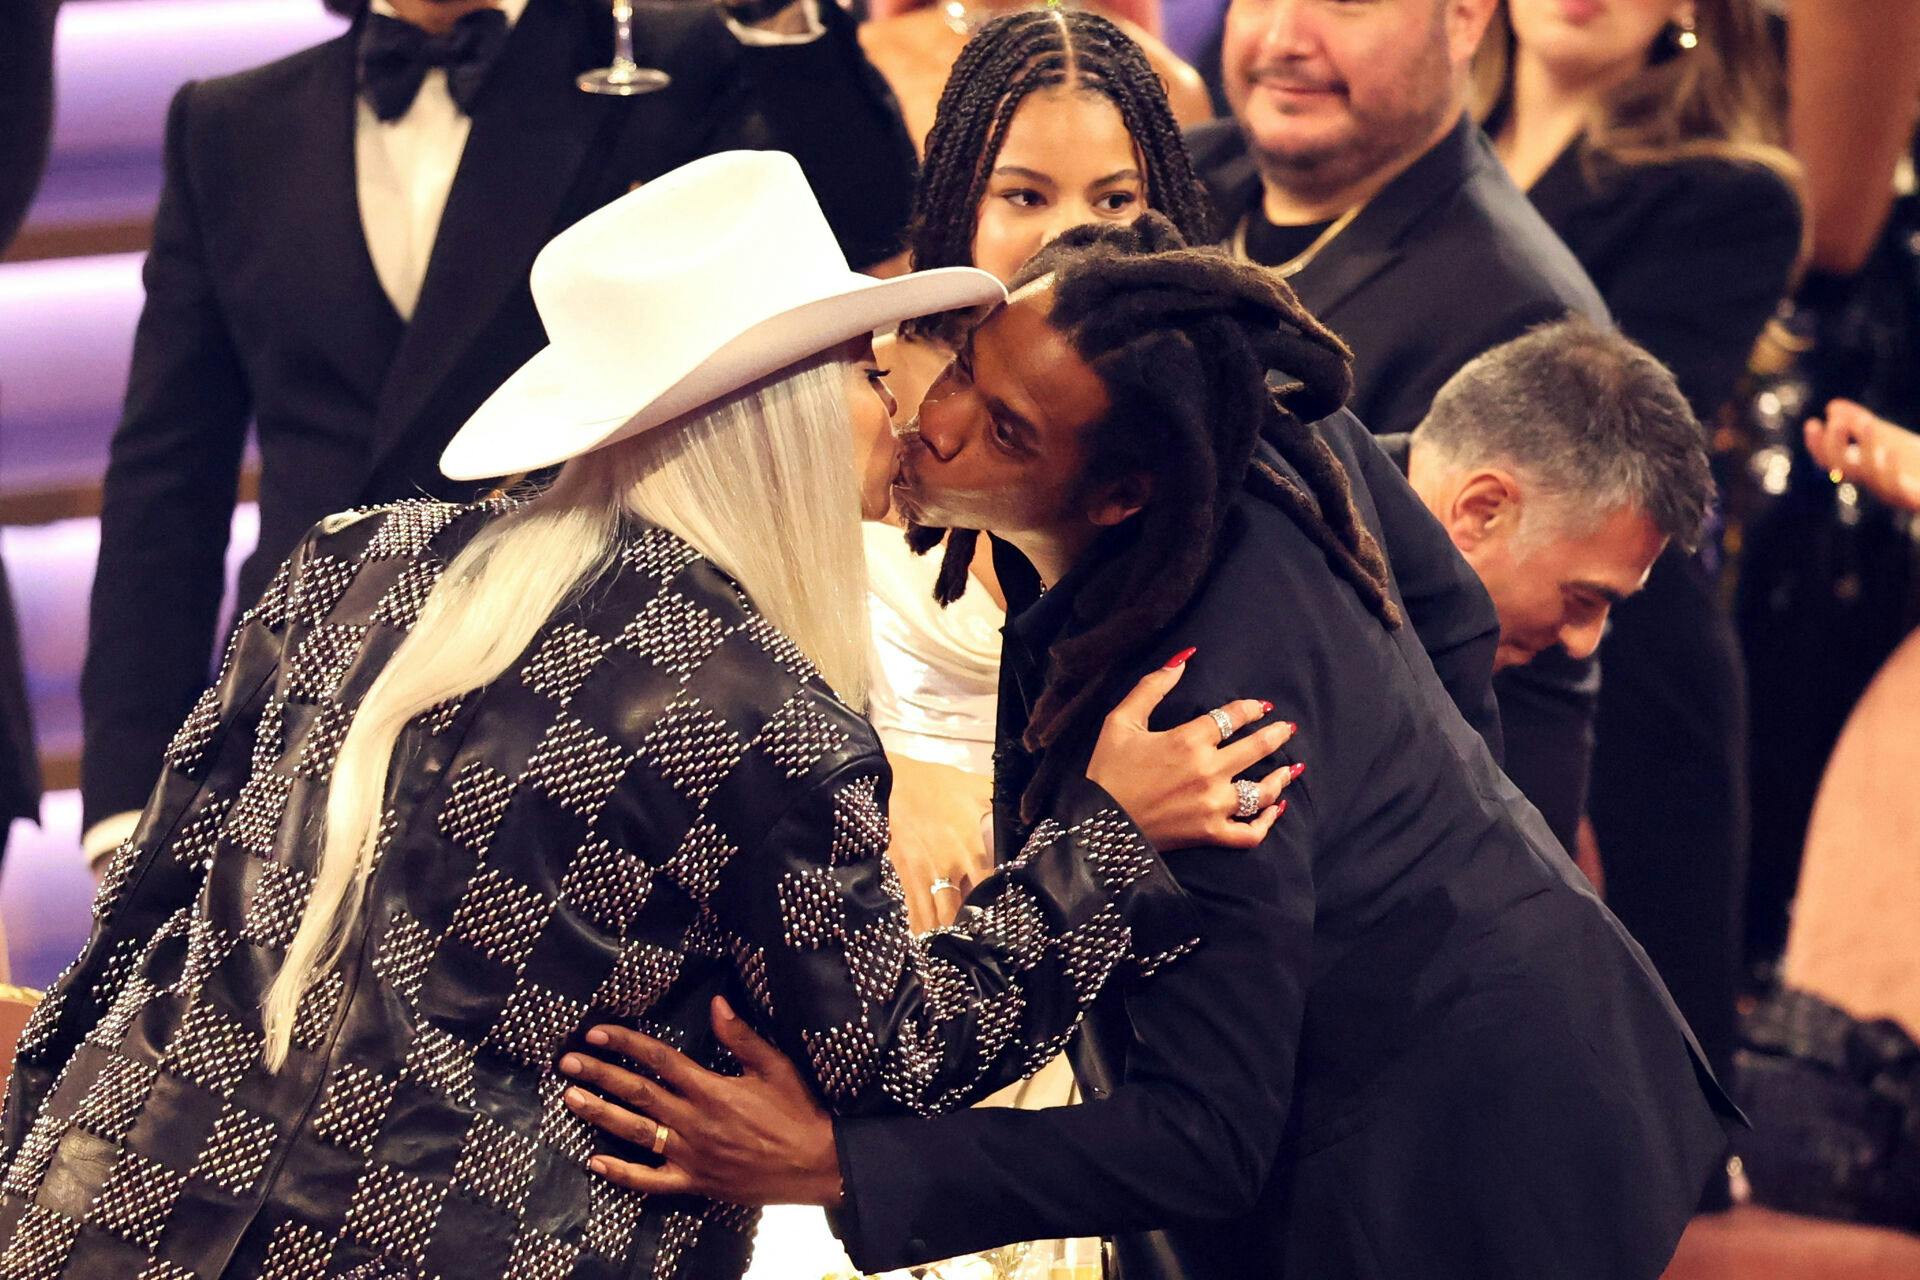 Der var tid til et lille kys, da Jay-Z skulle på scenen for at modtage sin ærespris.